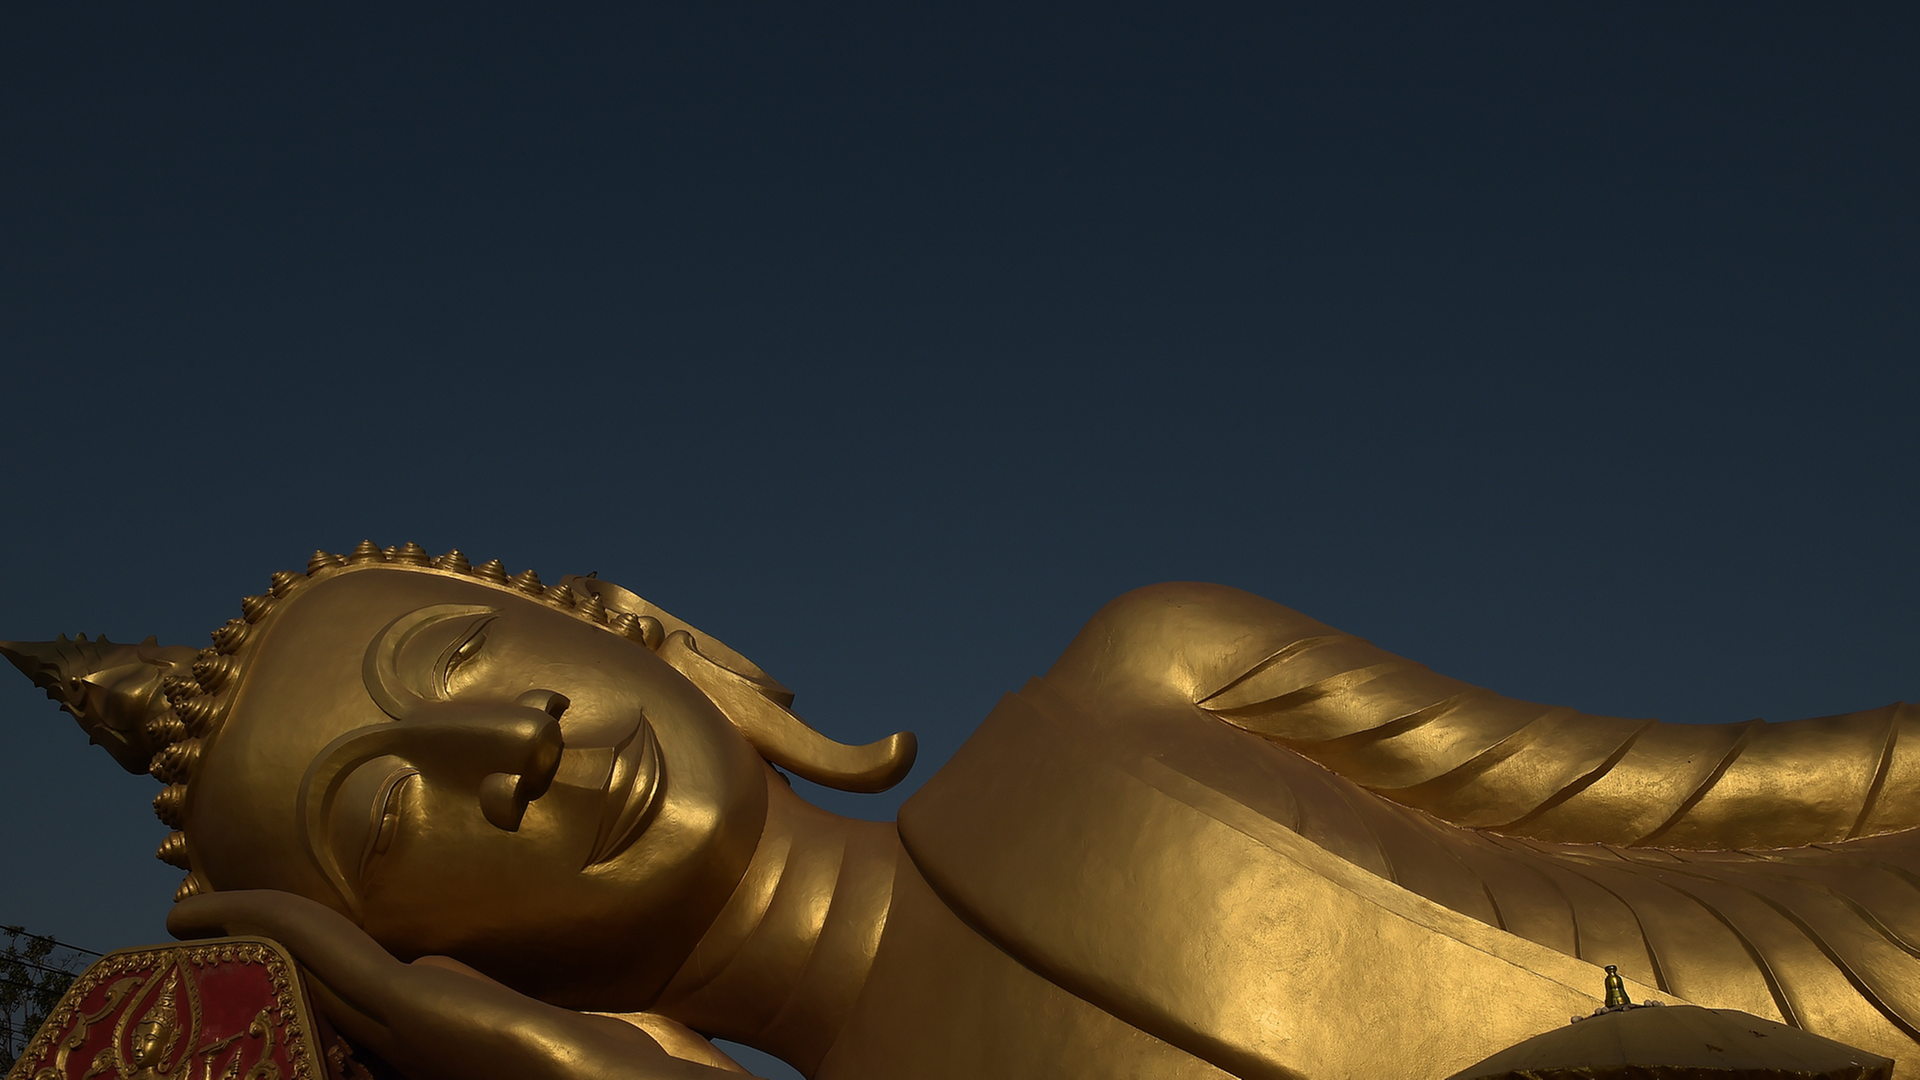 Eine liegende Buddha-Figur in Laos